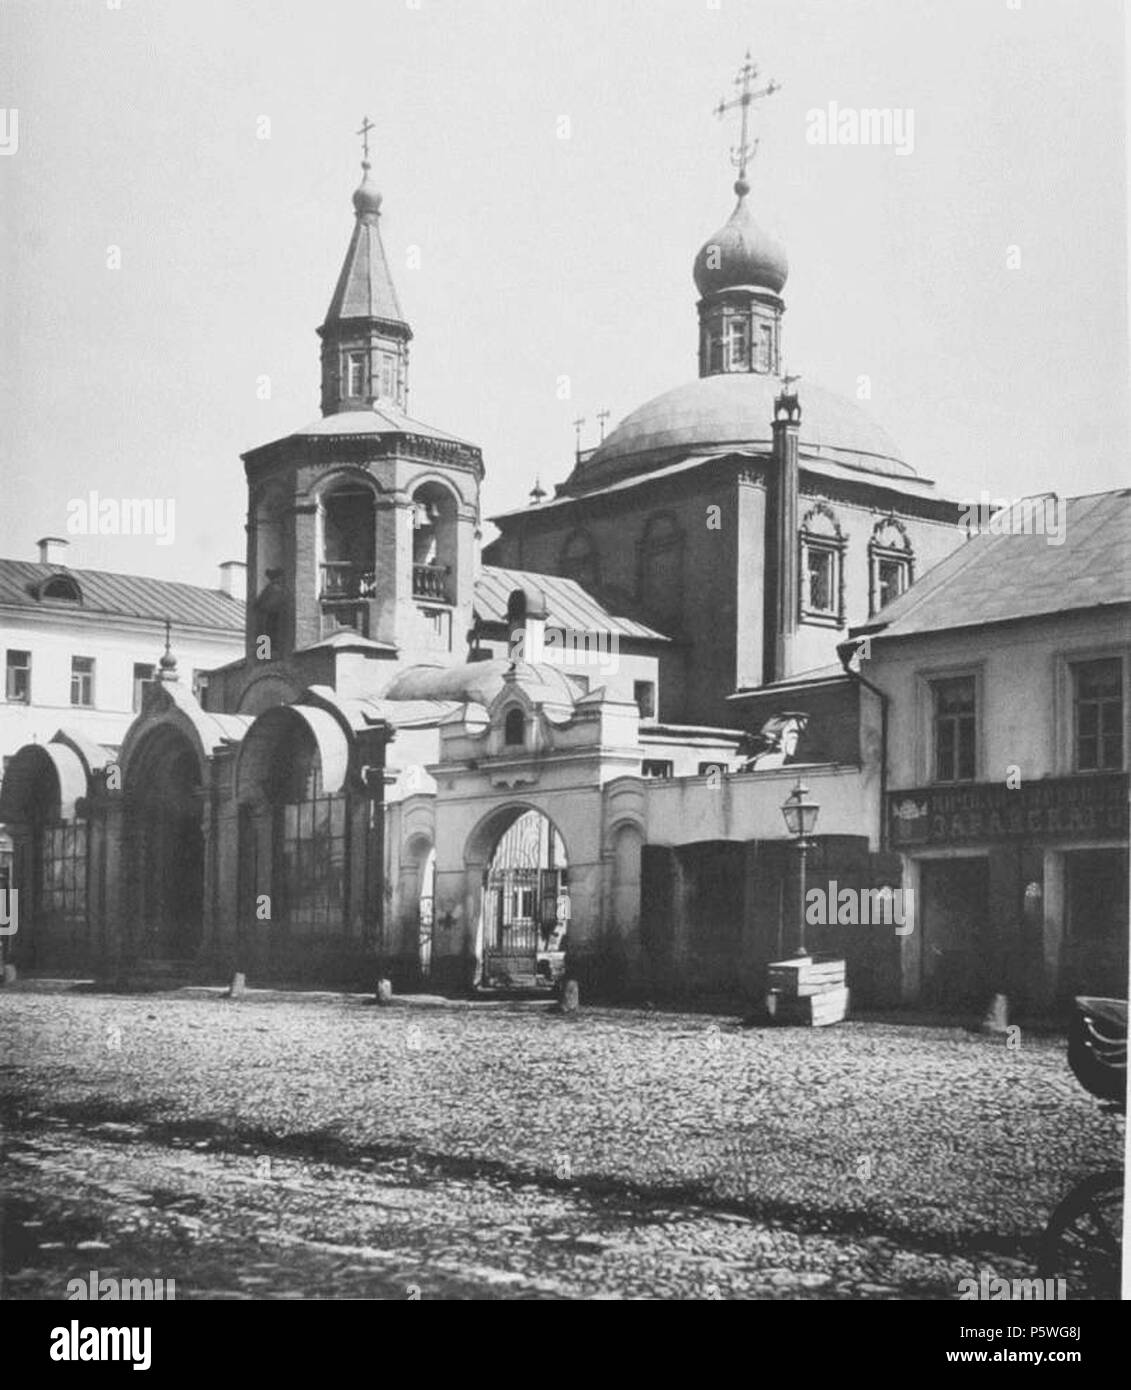 Старая православная церковь